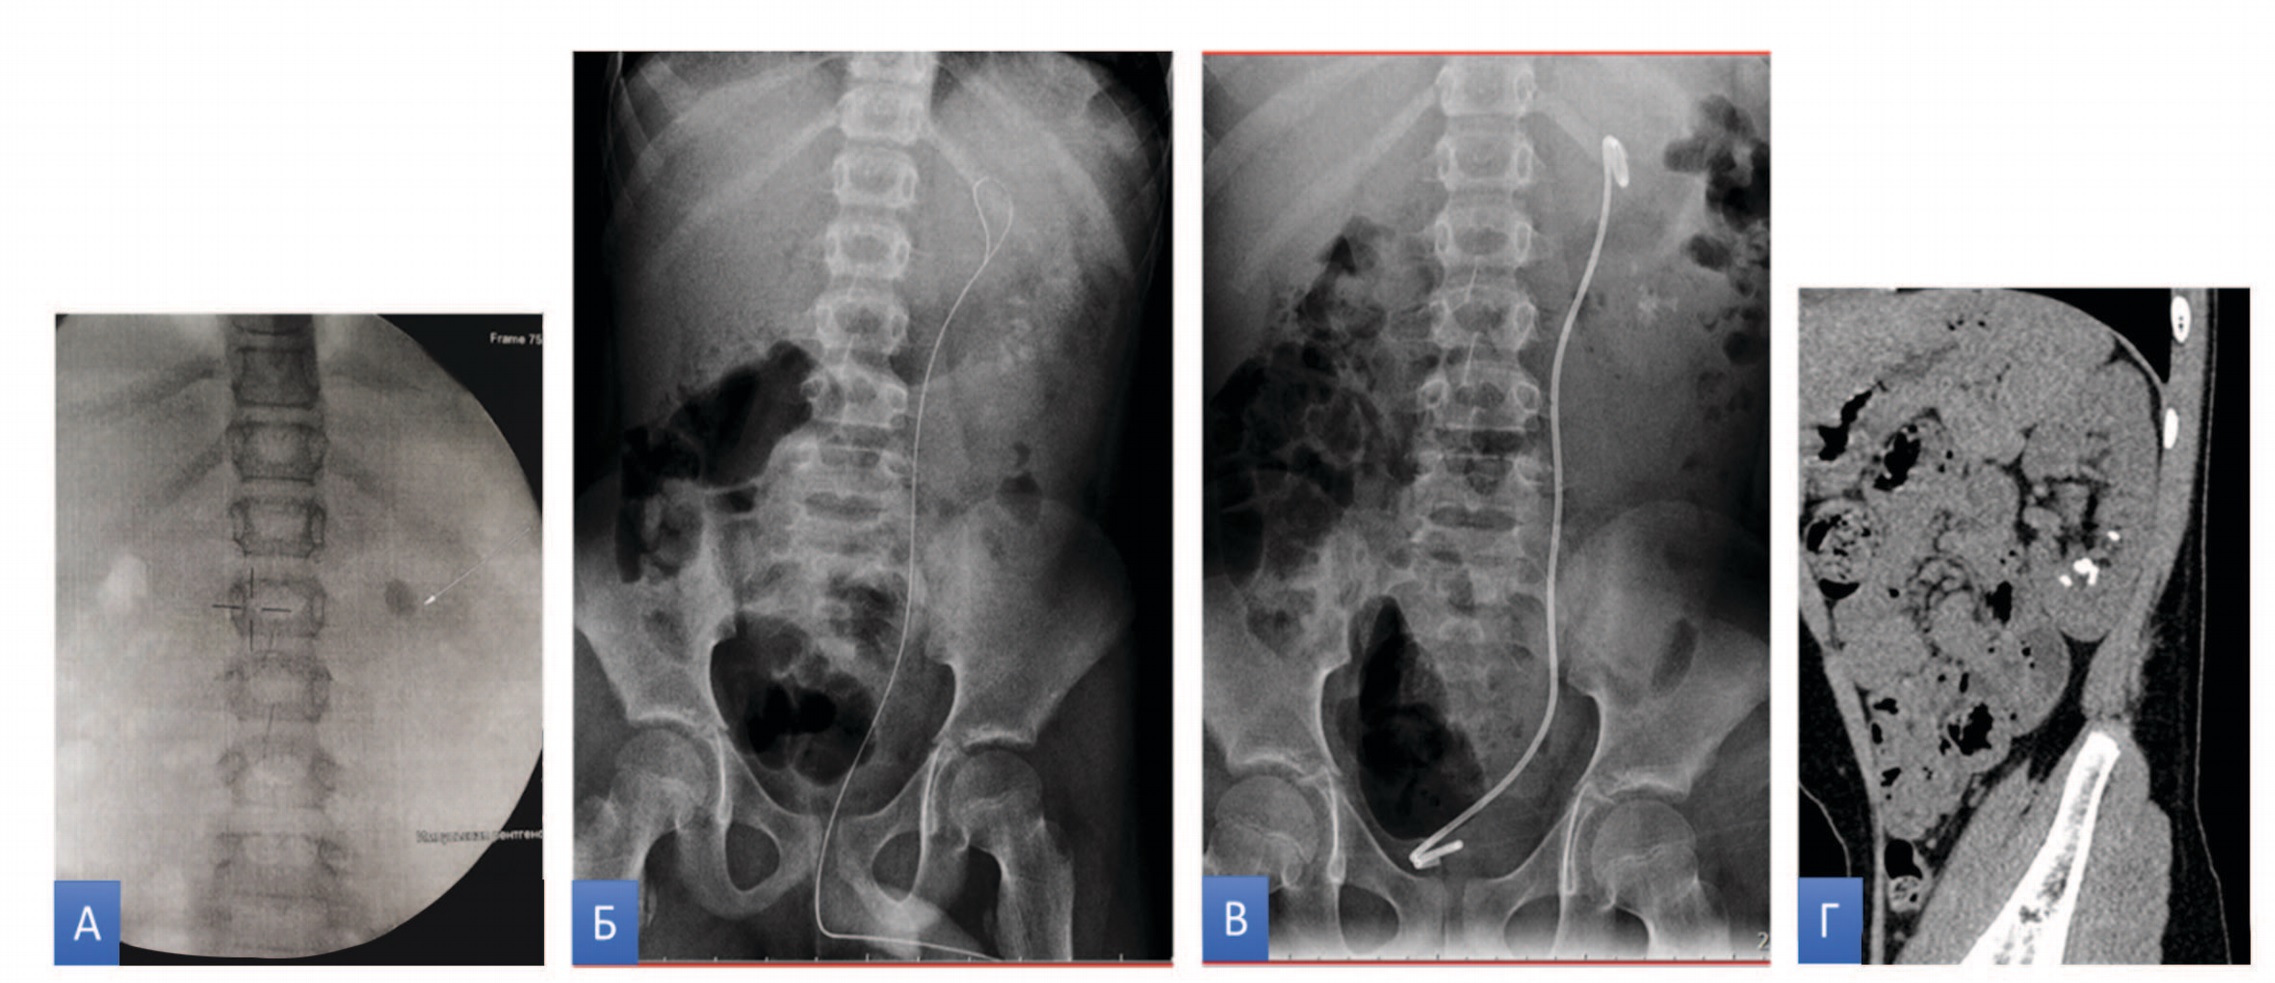 Клинические данные пациента М 10л. (слева направо): А - рентгеновский снимок до ДУВЛ, Б - рентгеновский снимок со струной проводником, В - рентгеновский снимок после удаления каменной дорожки и установки внутреннего стента слева, Г - КТ через 1 мес после ДУВЛ